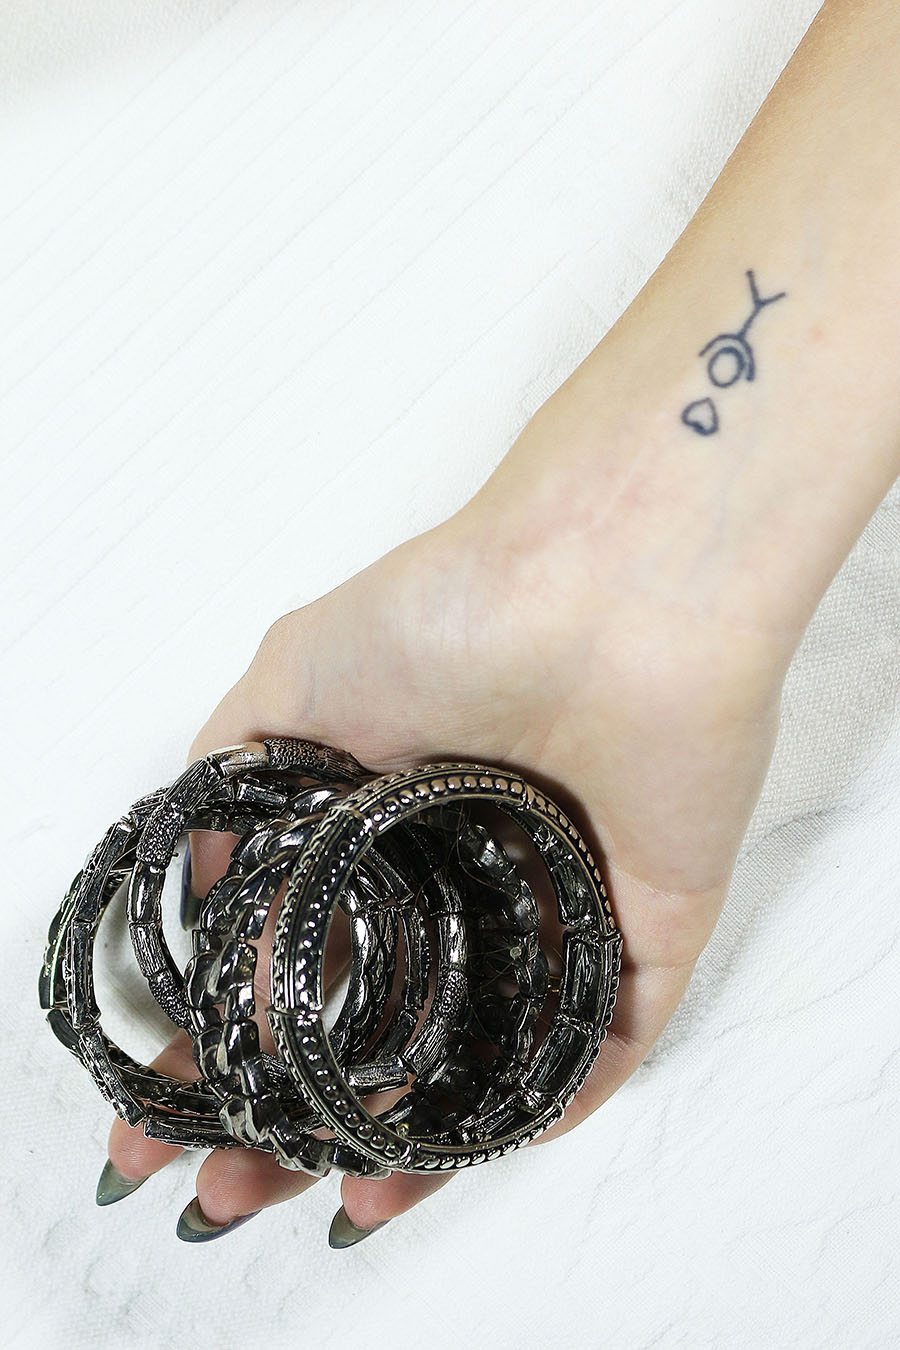 tatoo-pulseiras